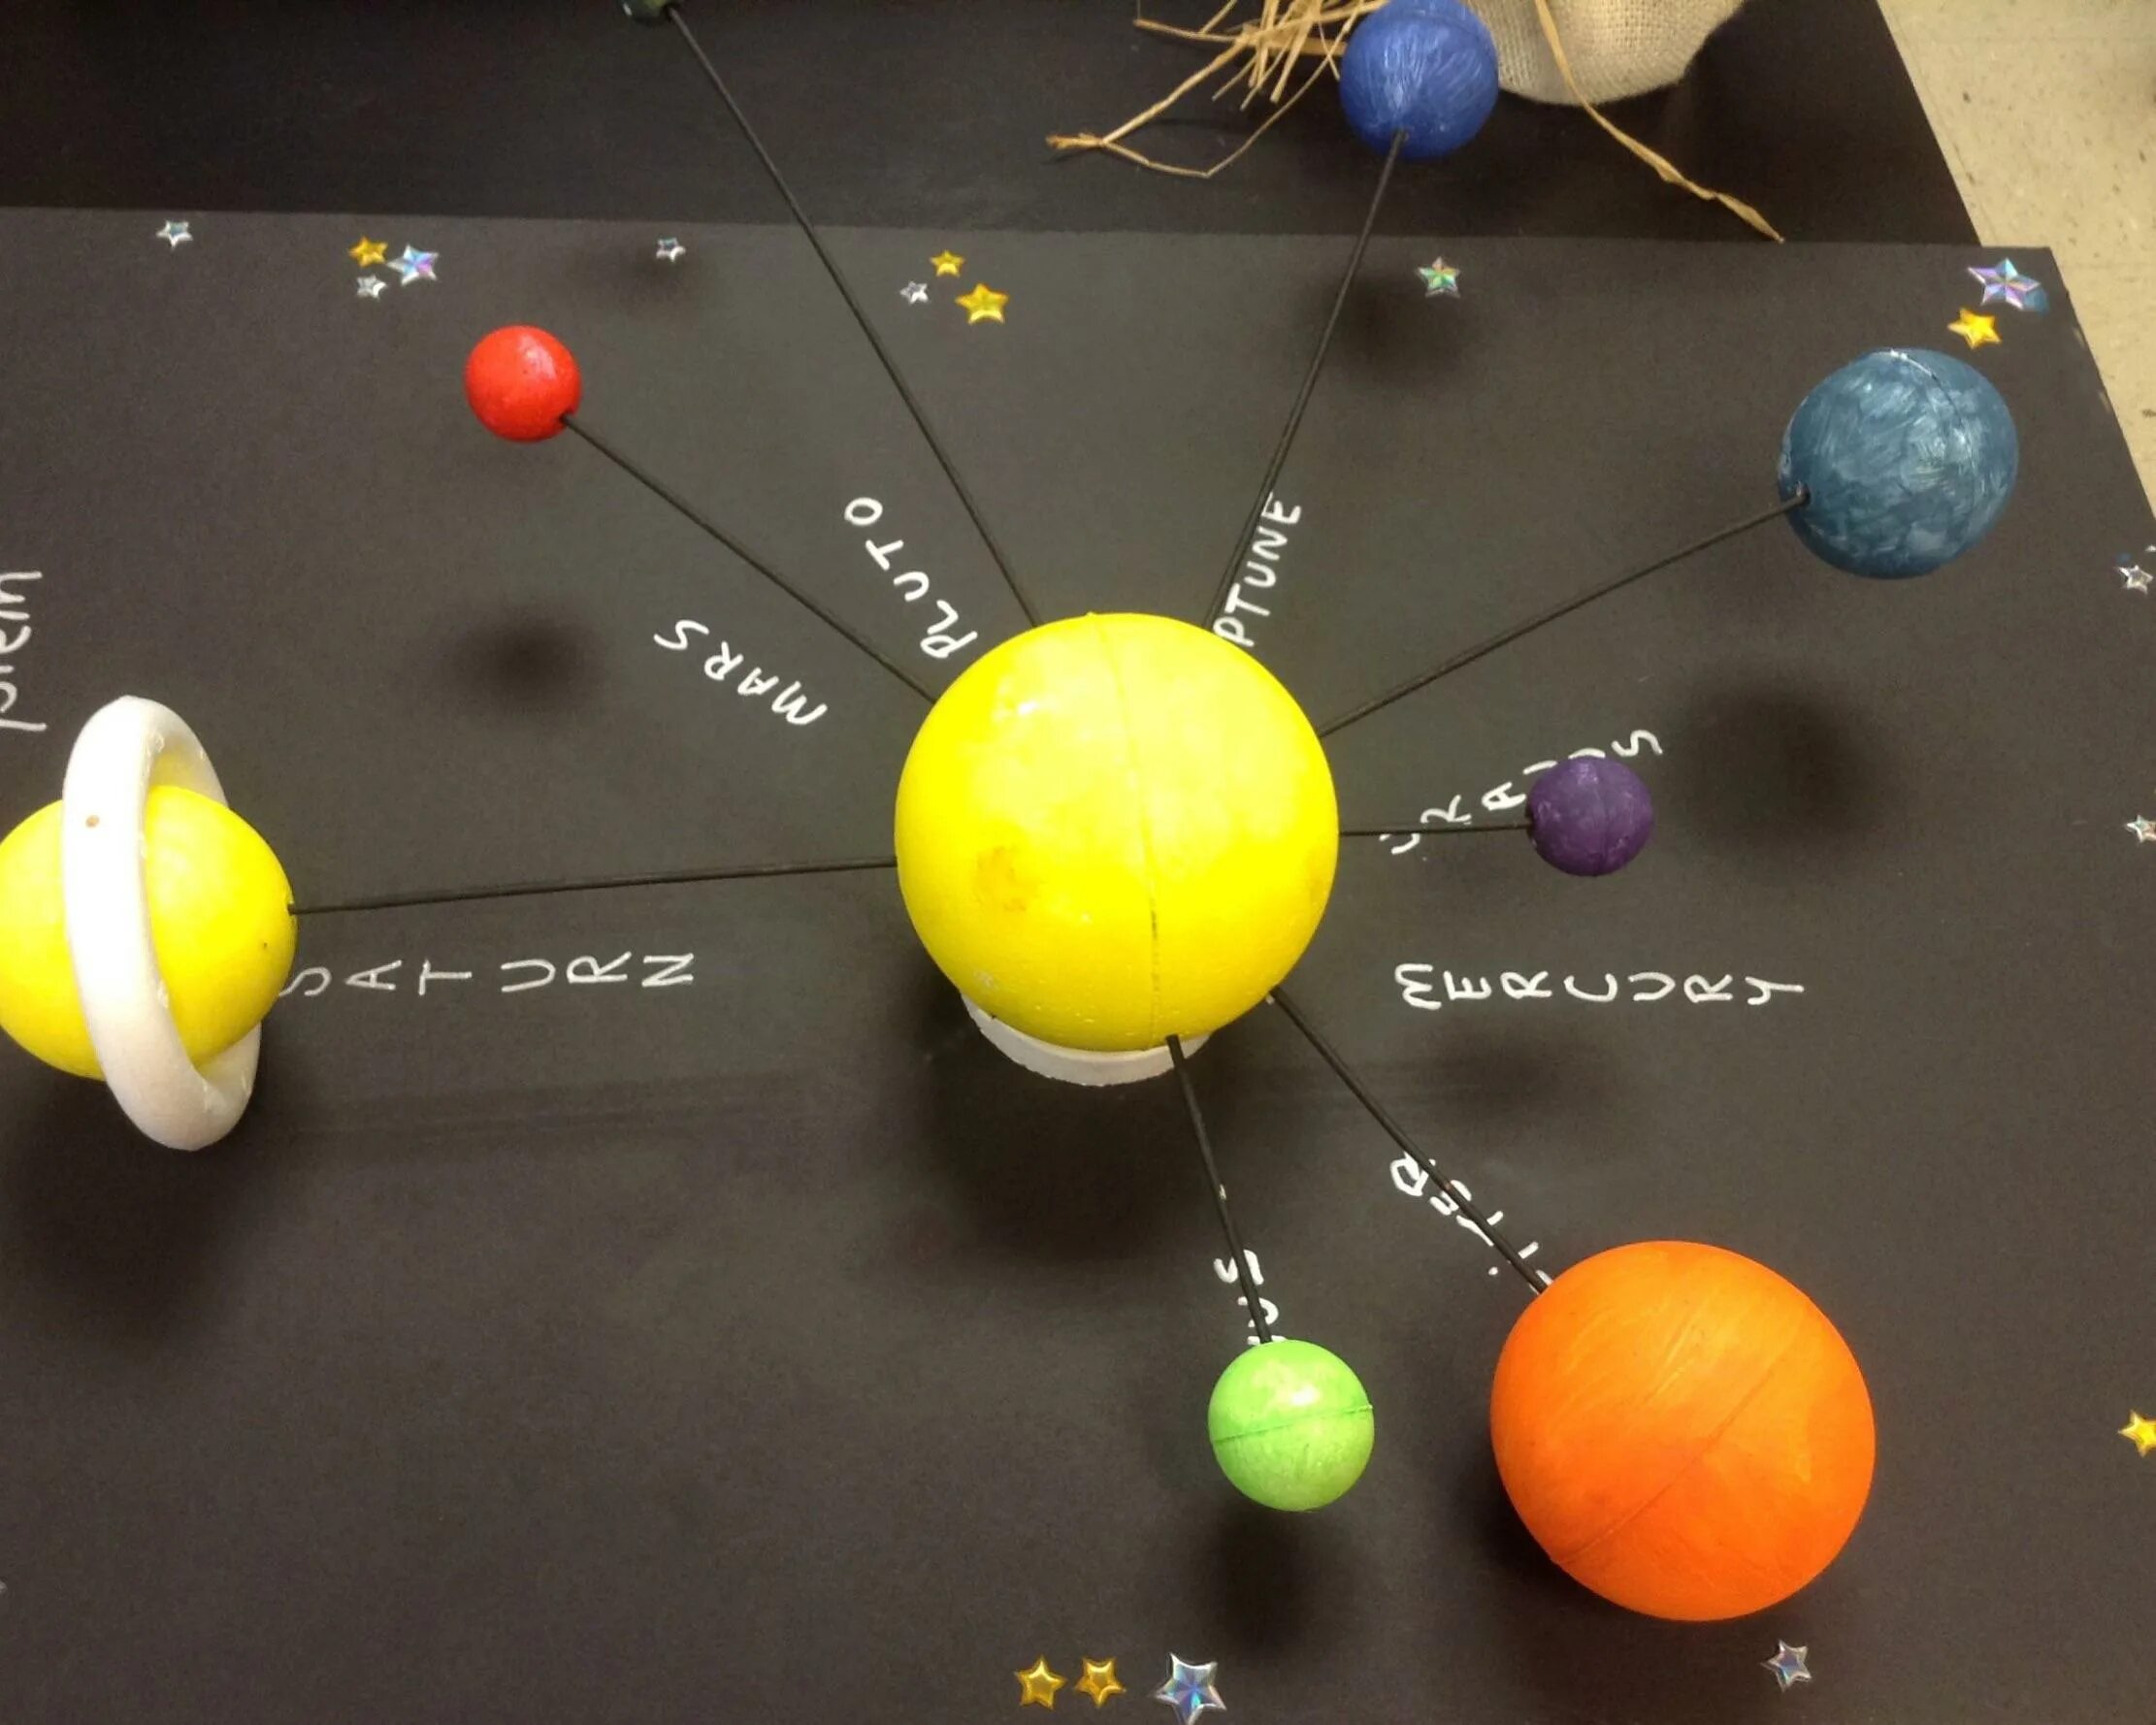 Модель "Солнечная система" (Планетная система; механическая). Вылепить модель солнечной системы (солнце и планеты). Планеты солнечной системы макет из пластилина. Планеты солнечной системы из пенопластовых шаров.